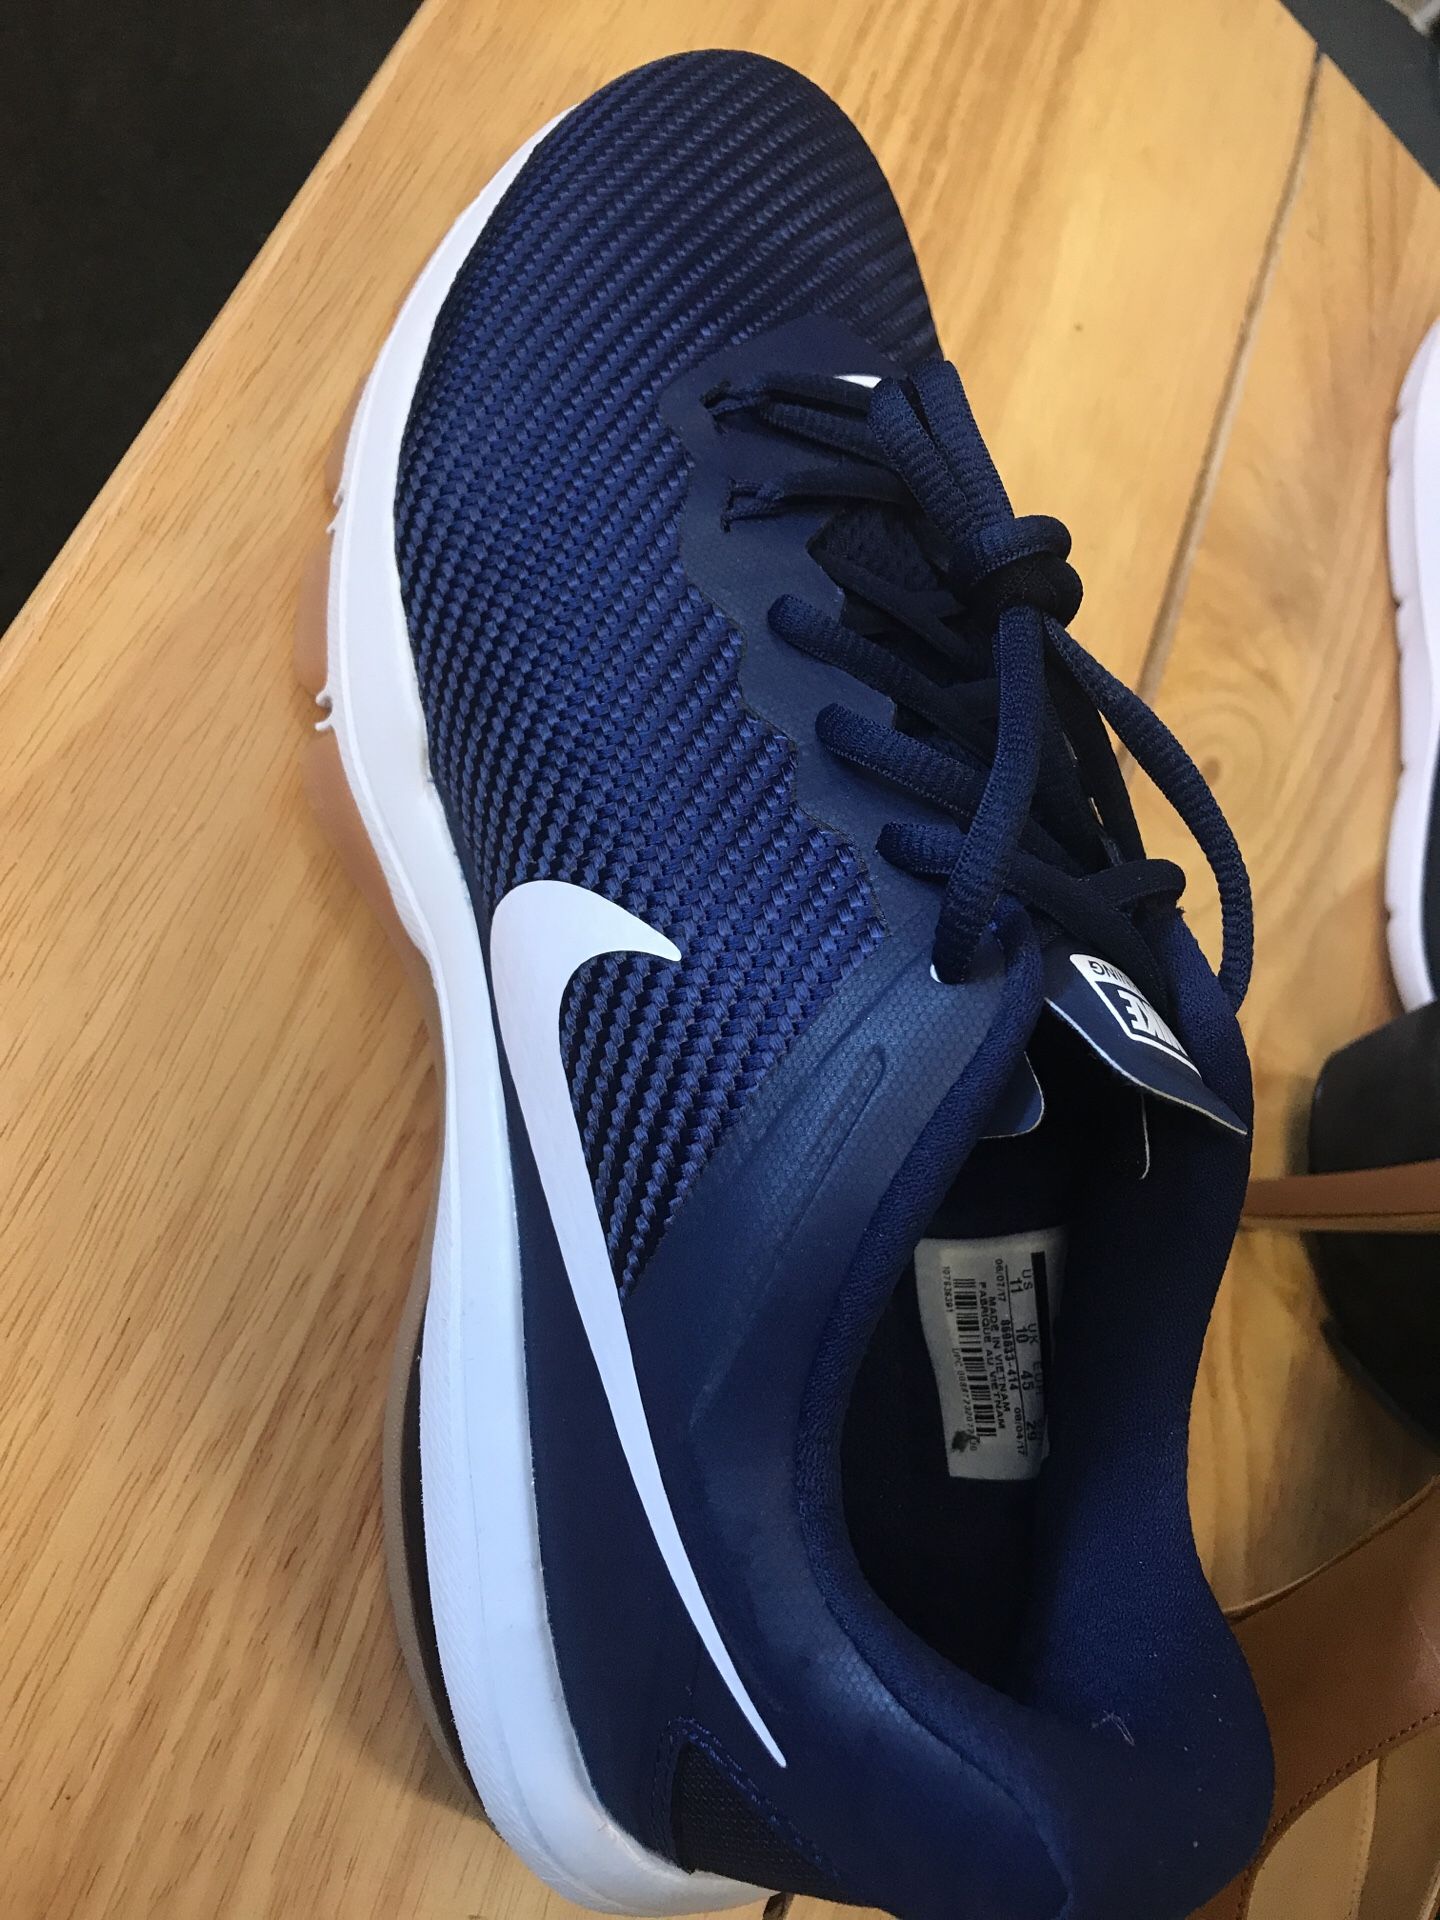 Nike training shoe size 11